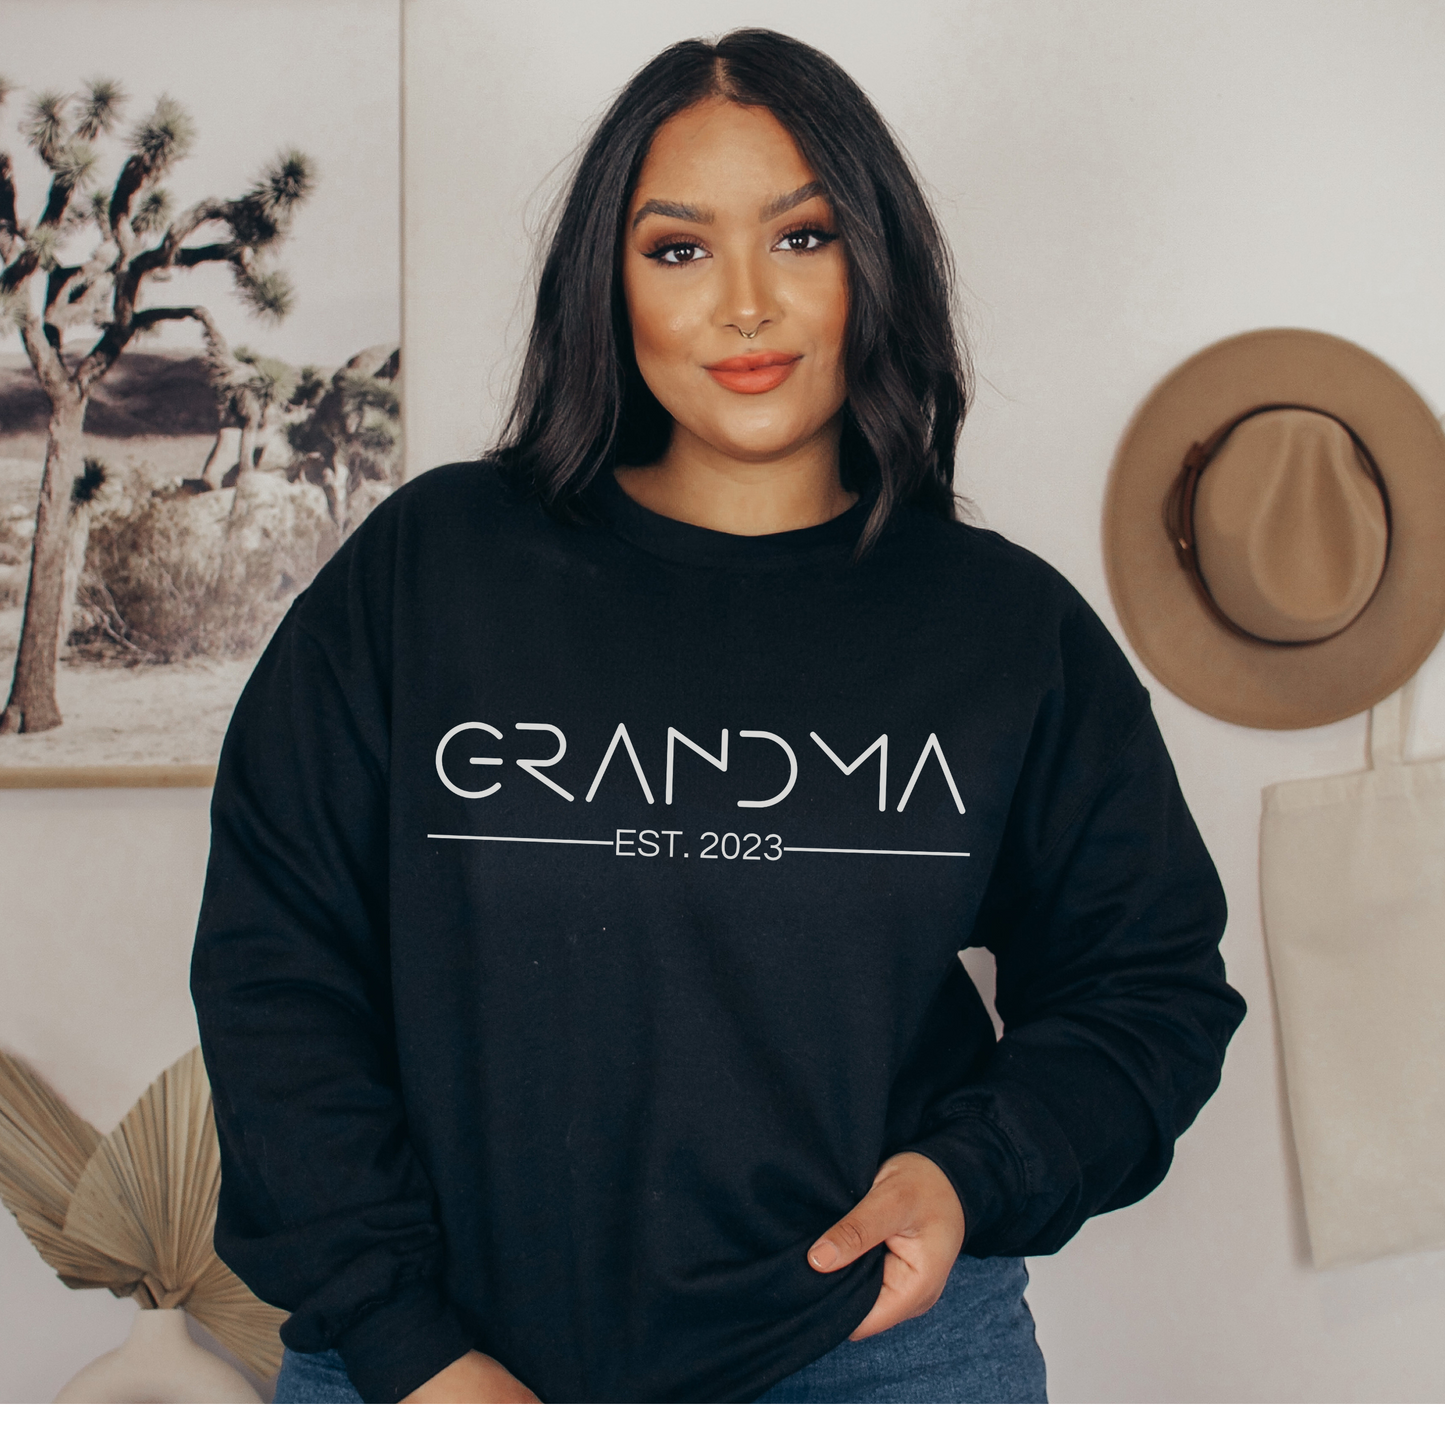 Minimalist Grandma Est Sweatshirt Grandma Established Top Grandma Shirt Gift for Grandma Birth Announcement Top Birth Announcement Top Gift